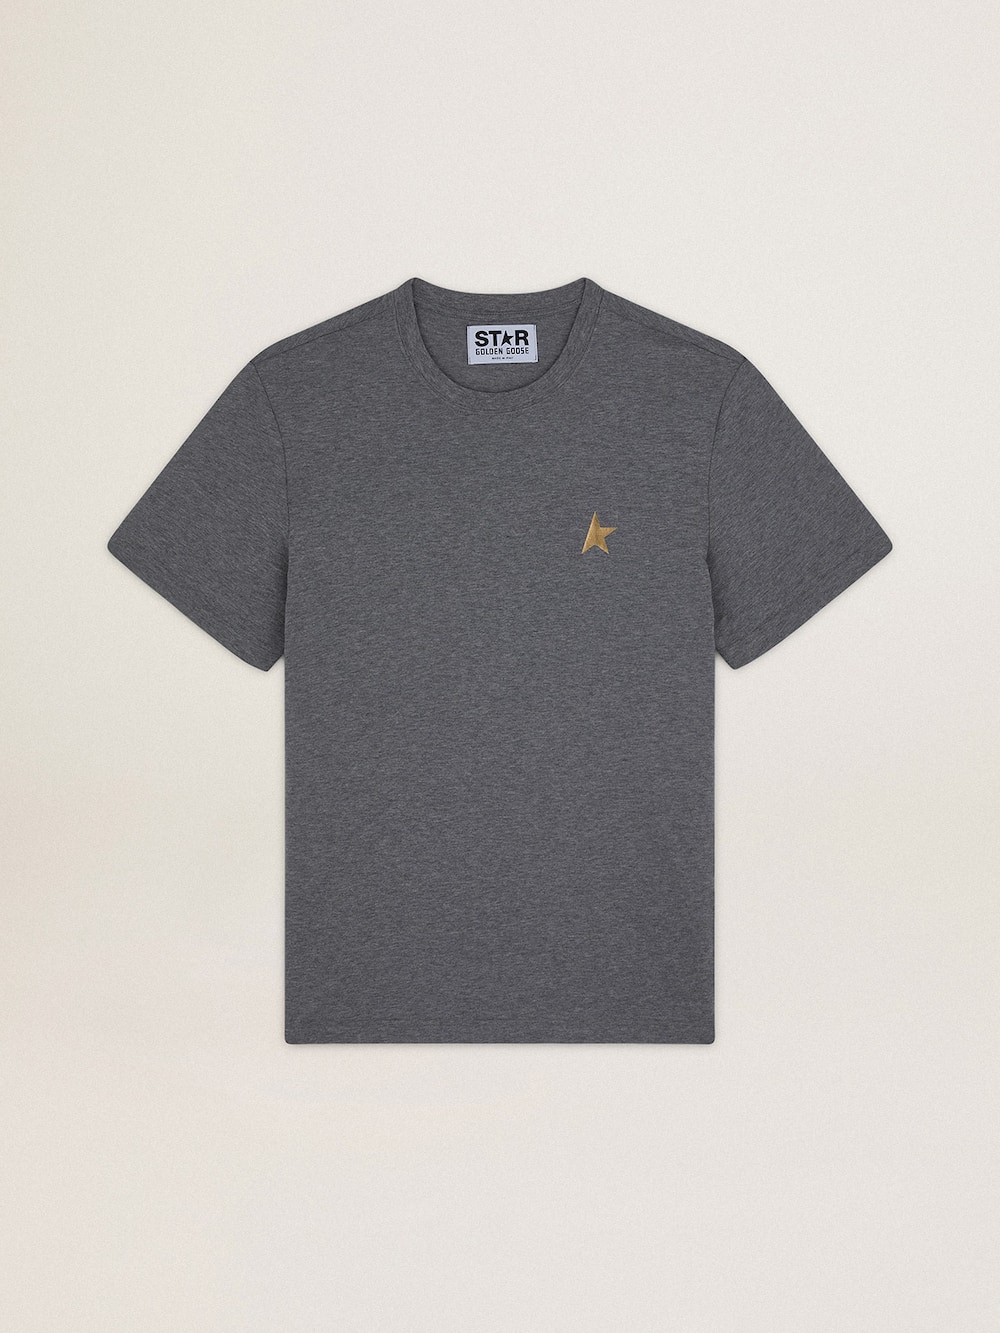 Golden Goose - T-shirt homme gris chiné avec étoile dorée sur le devant in 